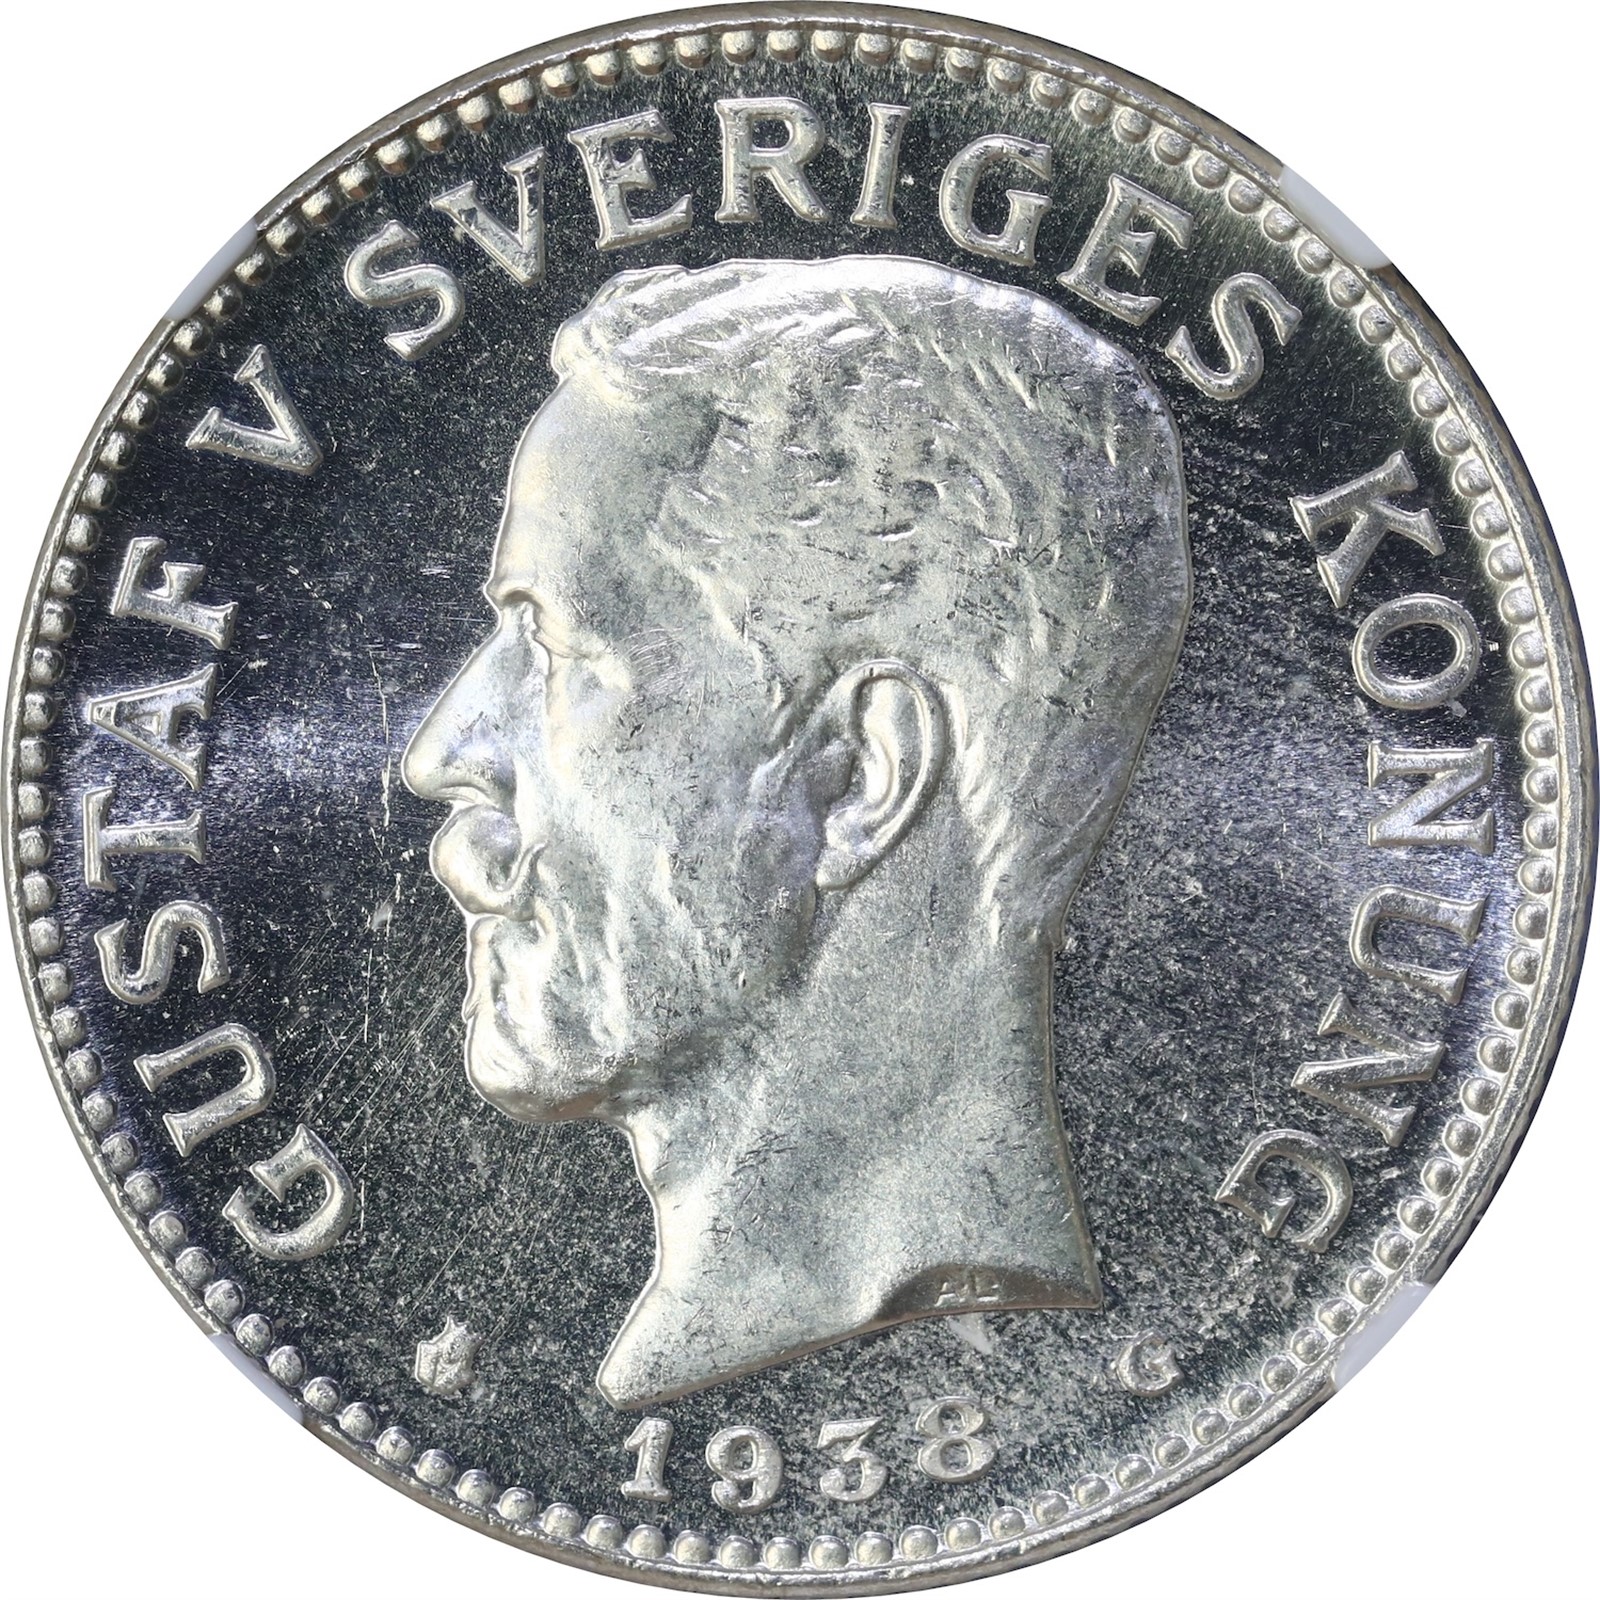 SWEDEN. Gustav V. 2 Kronor 1938 NGC MS65PL